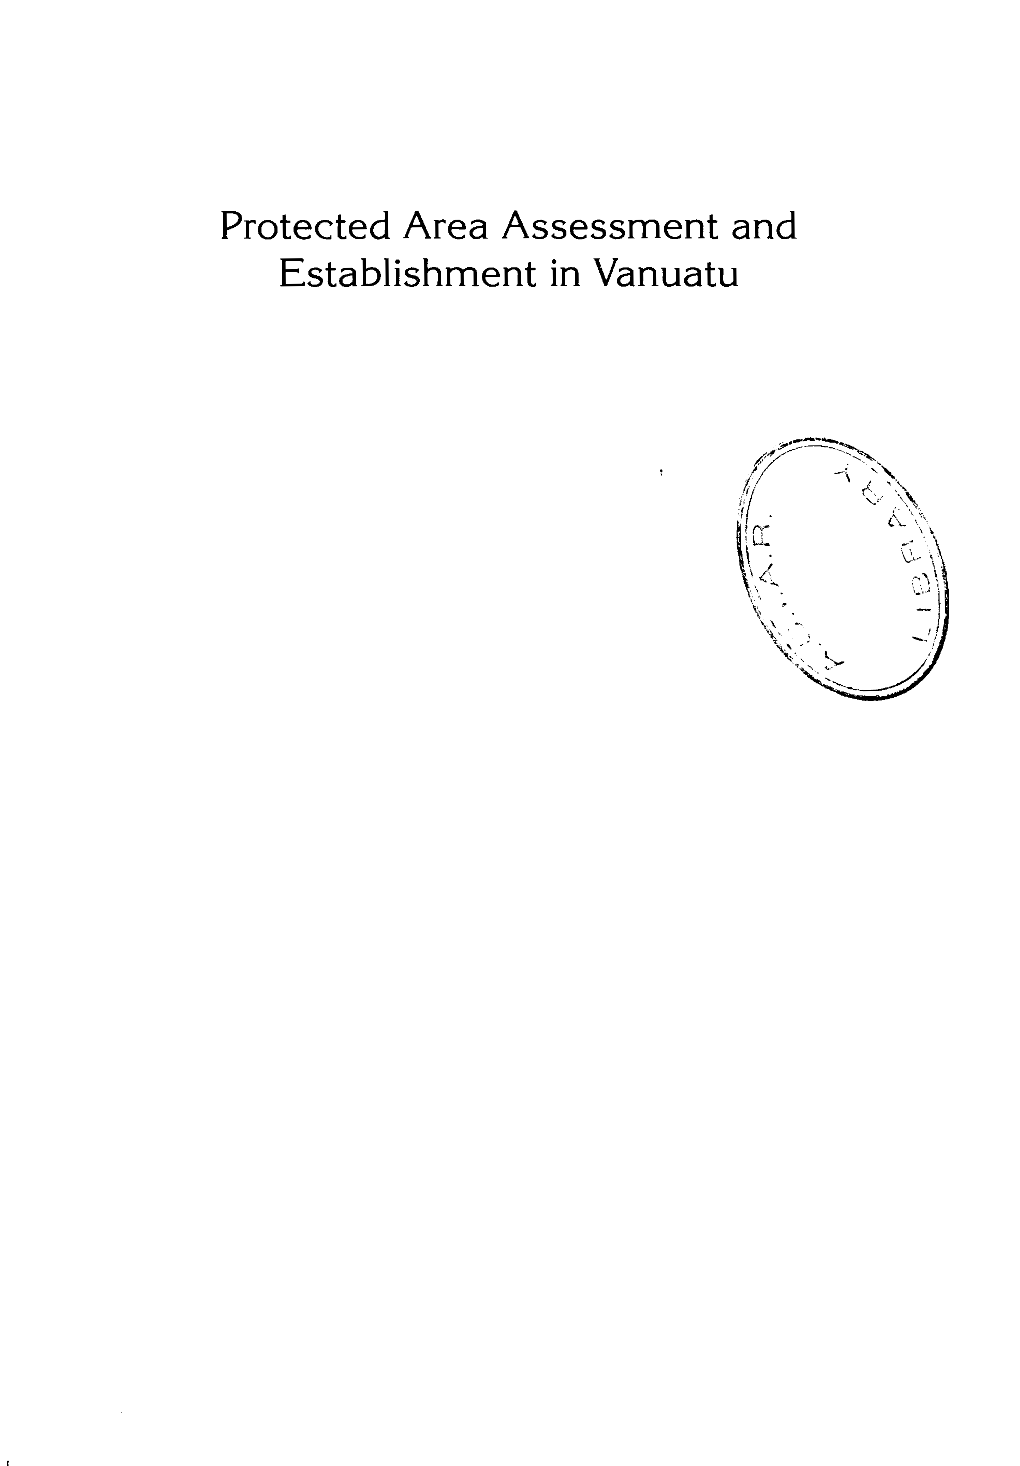 Protected Area Assessment and Establishment in Vanuatu